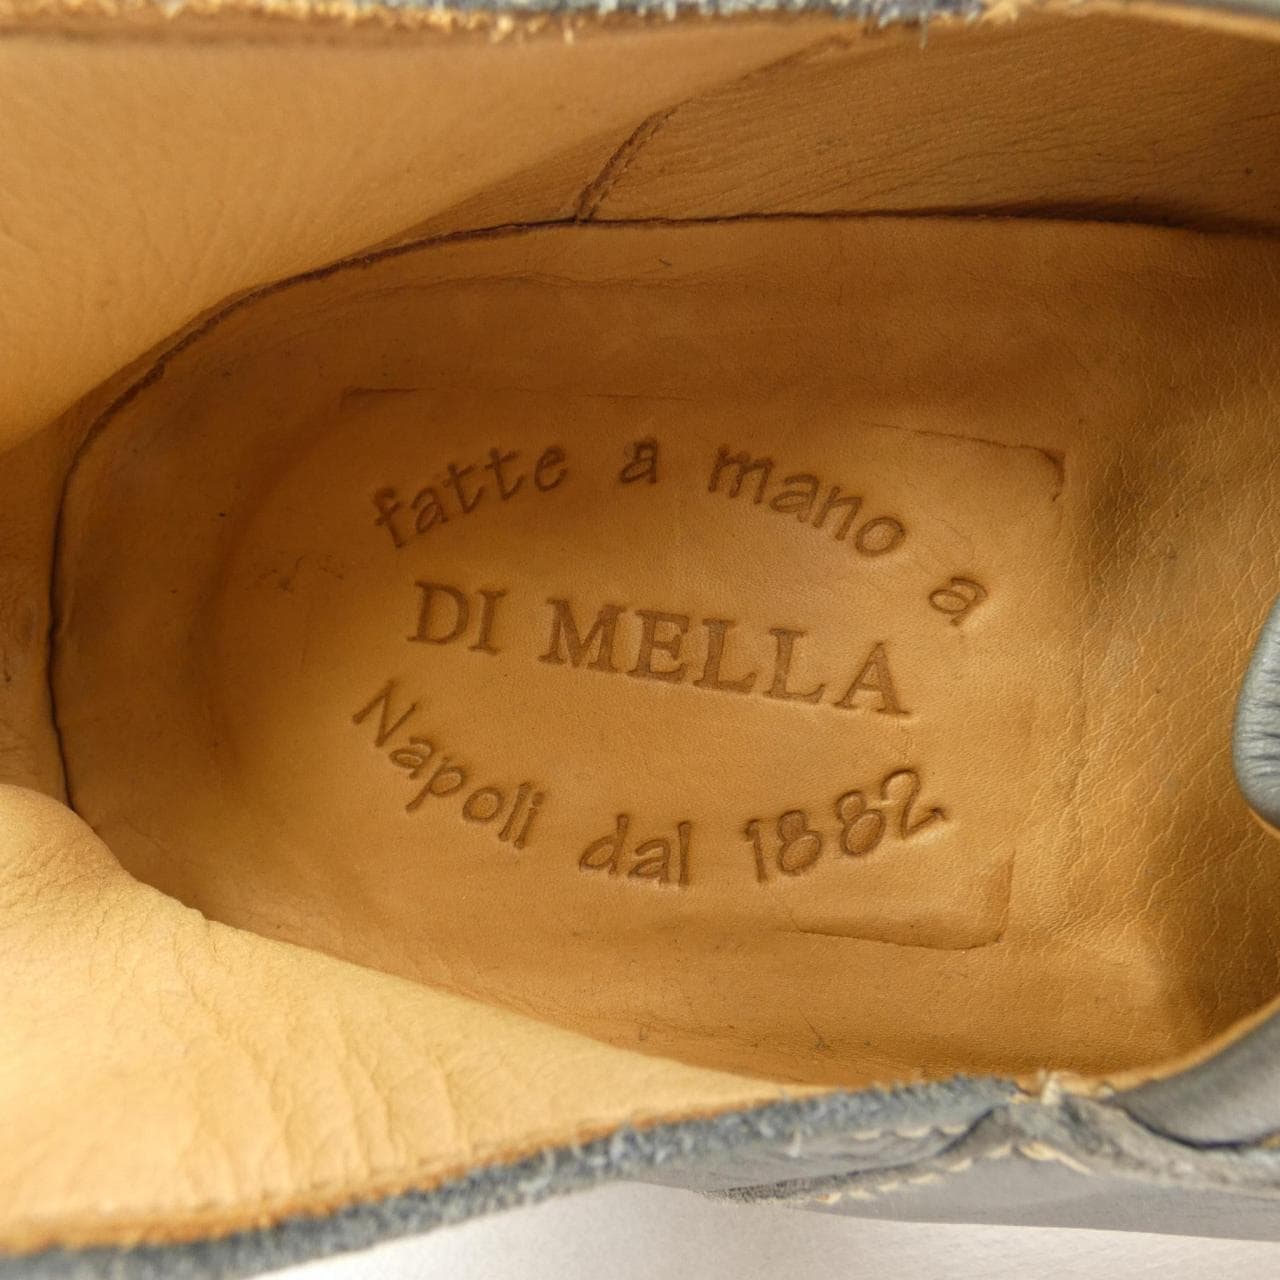 DI MELLA shoes